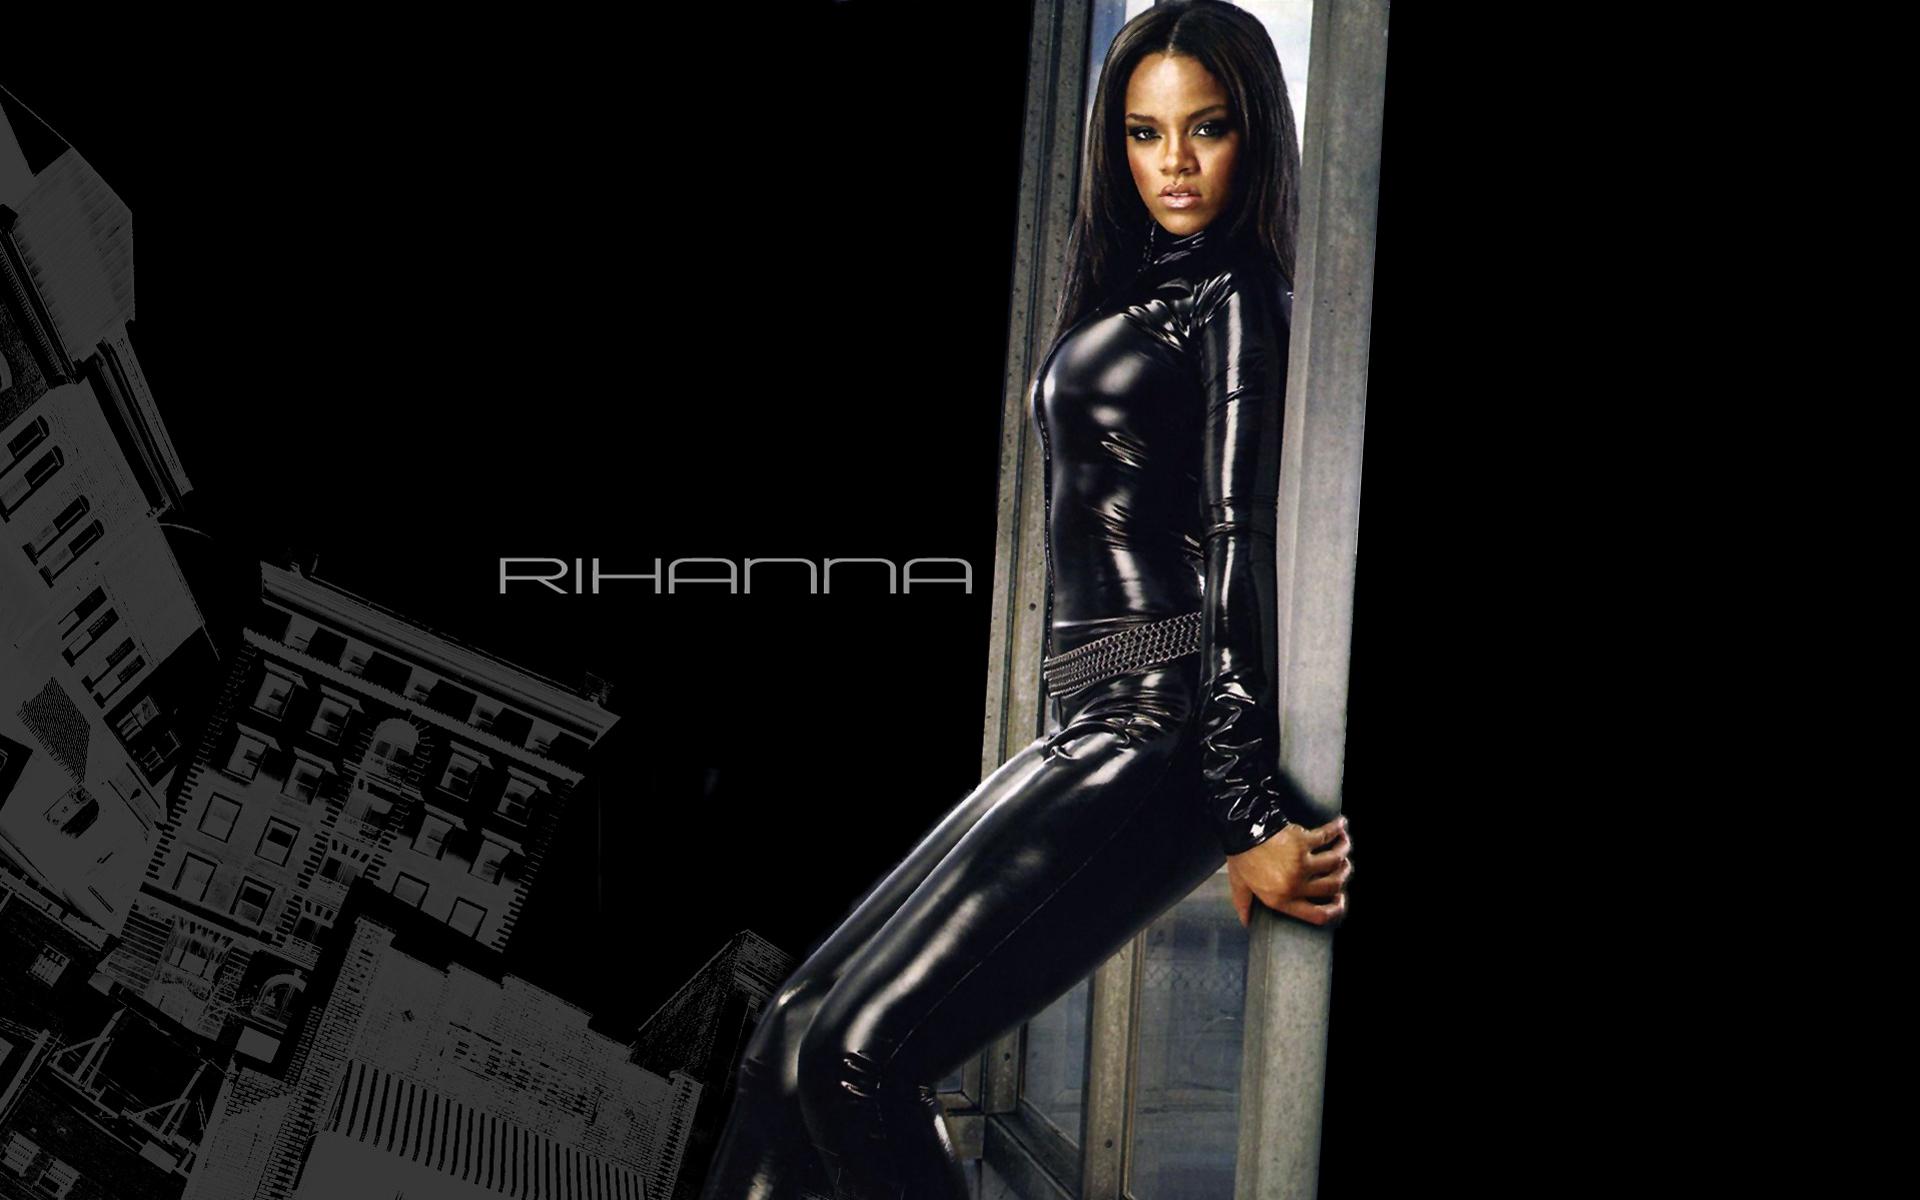 Rihanna Hot Widescreen Wallpaper -17